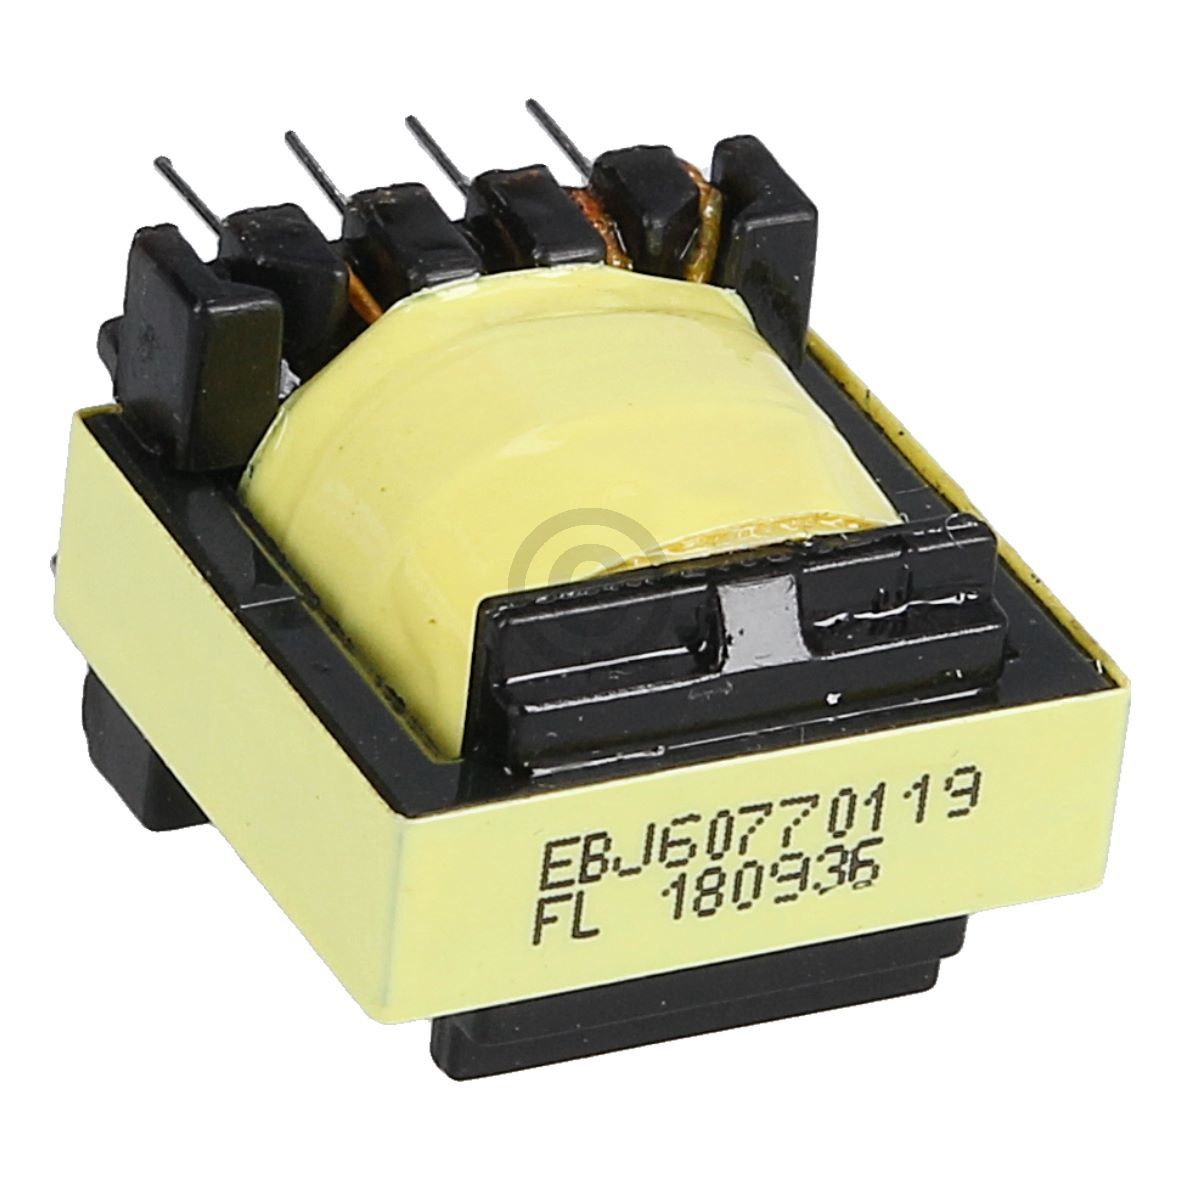 Transformator EBJ60770119 für Lautsprecher